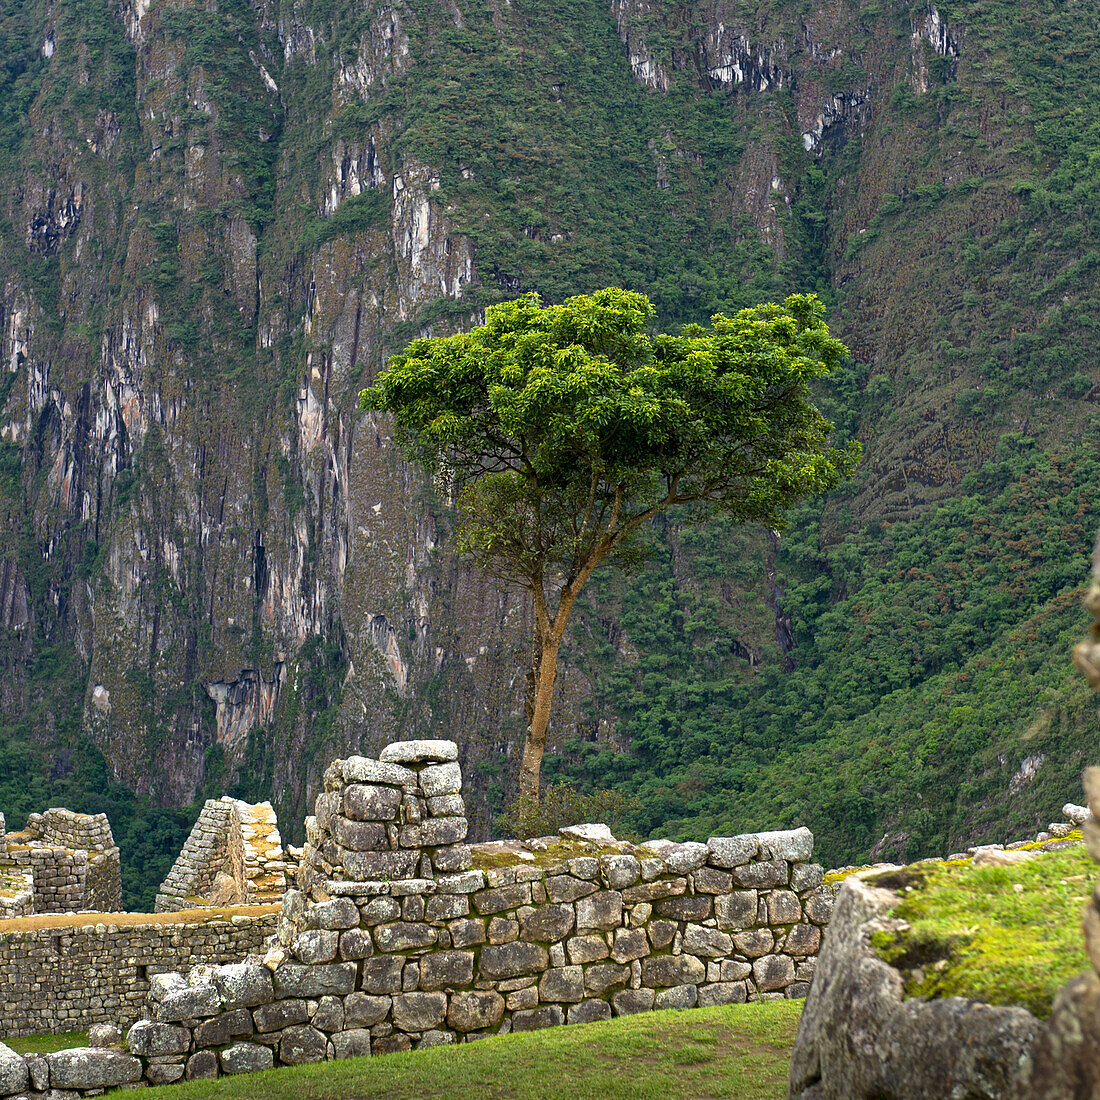 'Stone Structures At Machu Picchu; Peru'